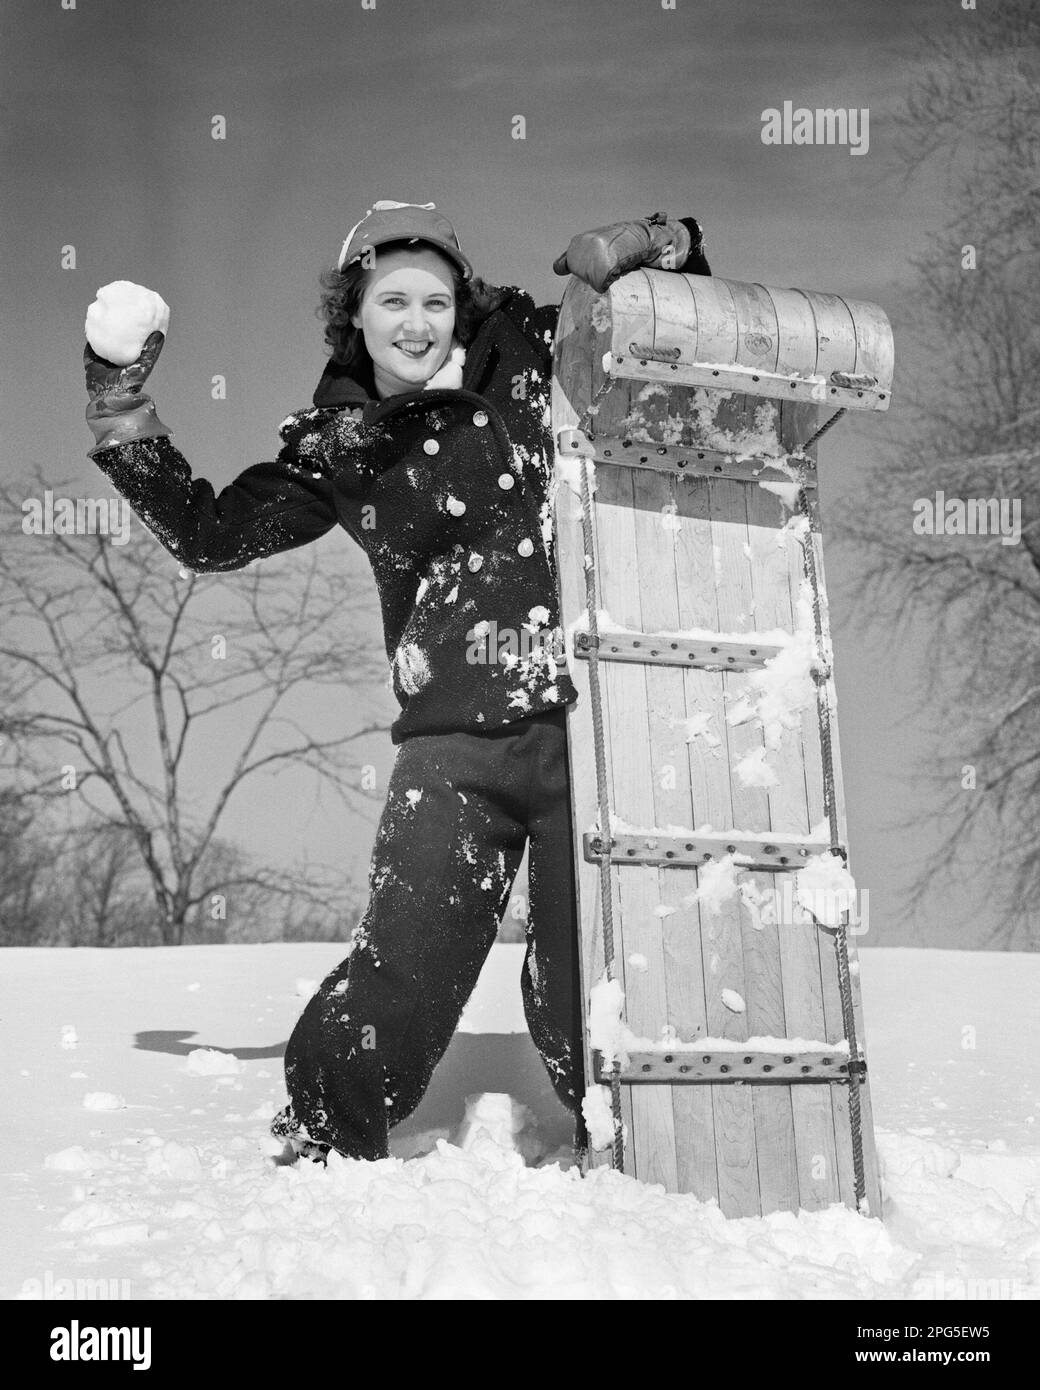 Schneeanzug Schwarzweiß-Stockfotos und -bilder - Alamy